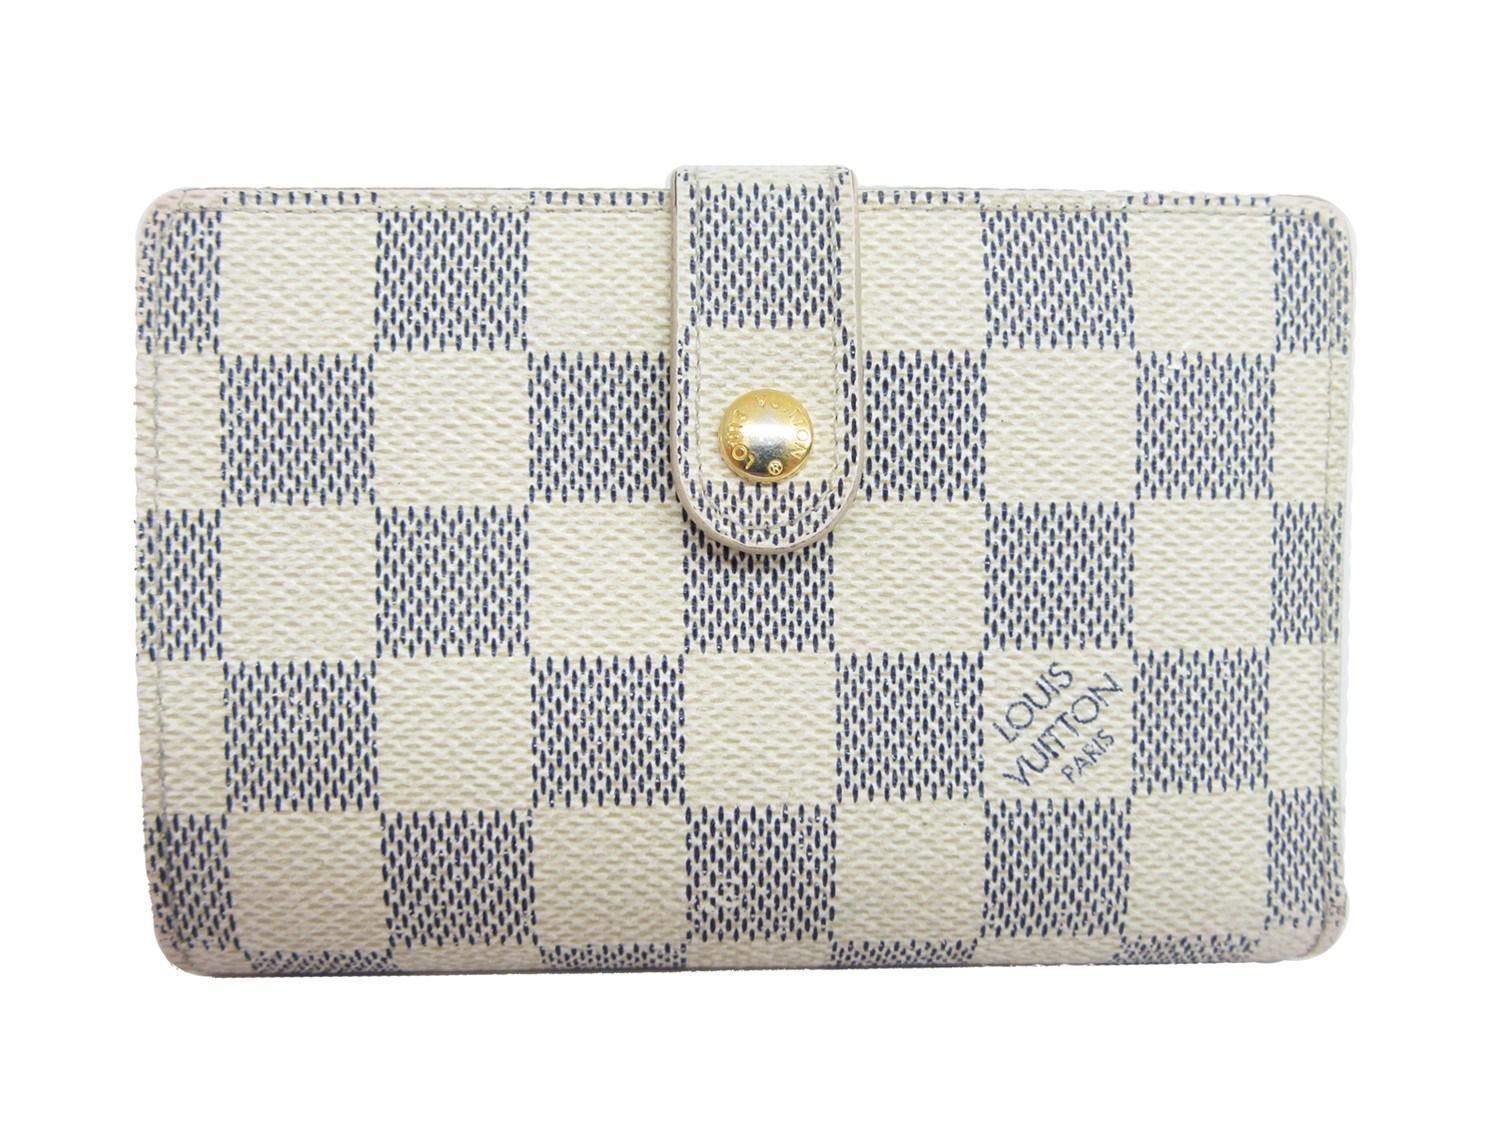 Lyst - Louis Vuitton Auth Damier Azur Portefeuille Viennois Bifold Wallet Purse N61676 in White ...